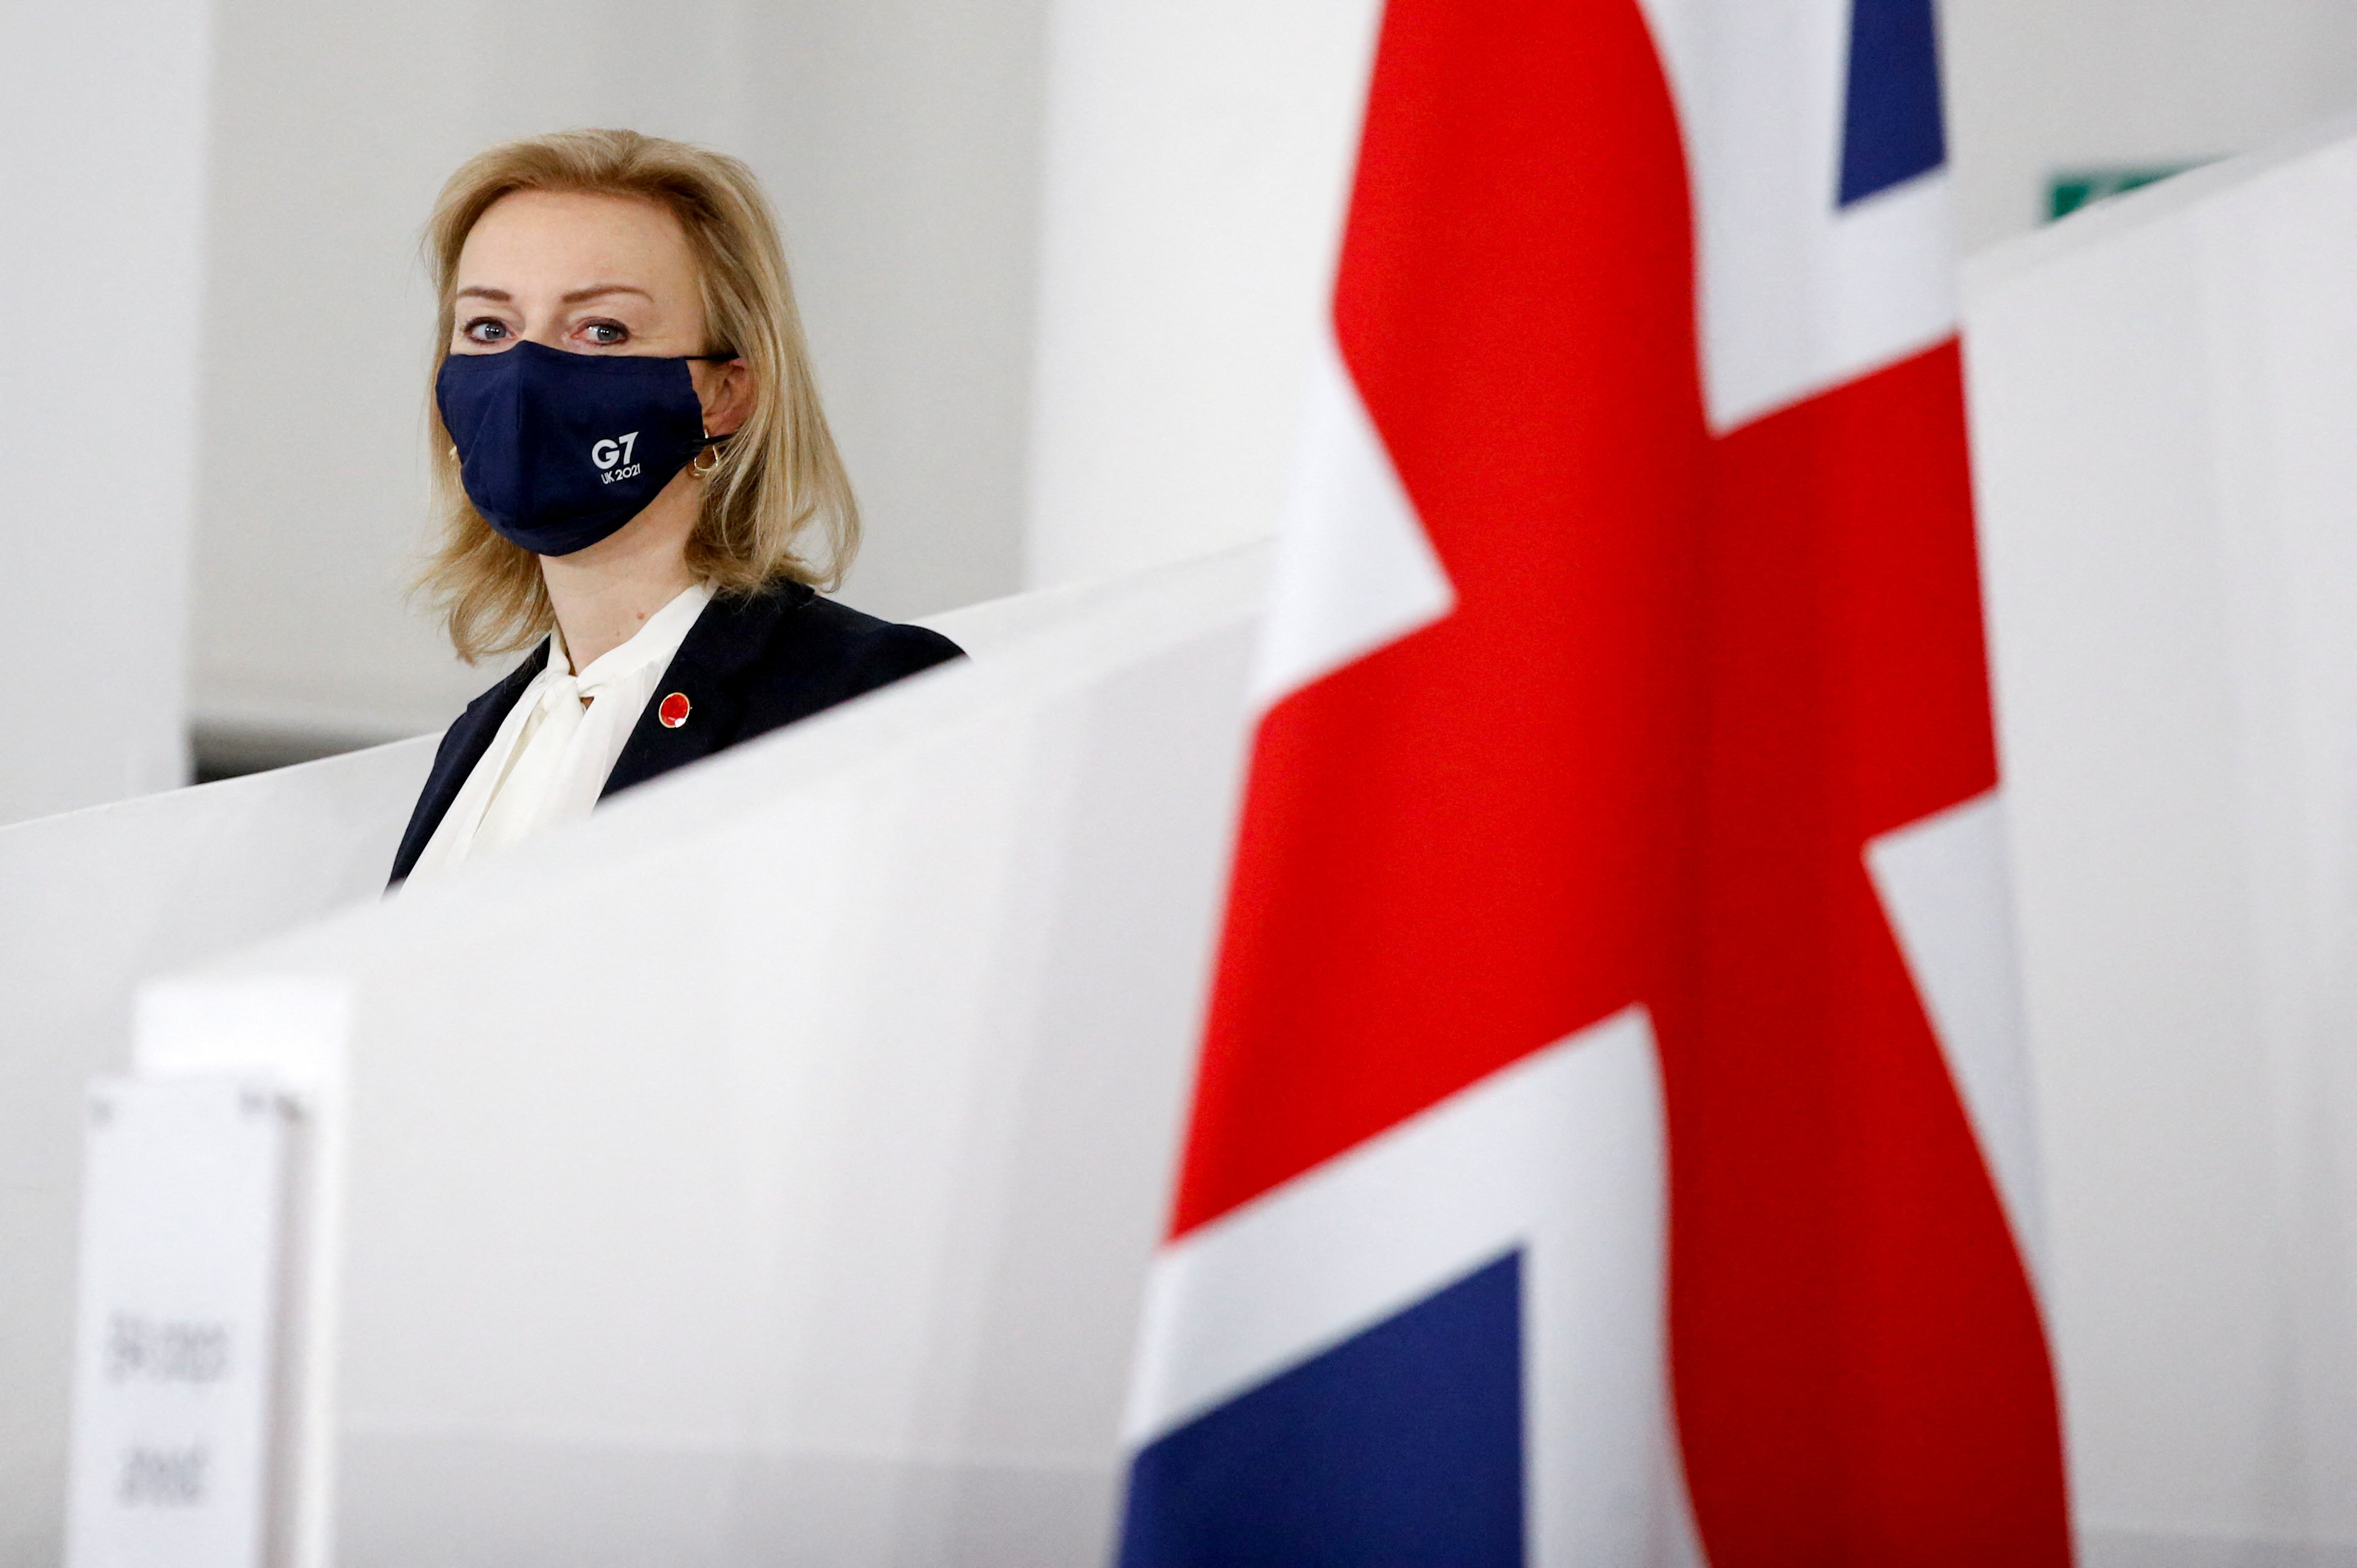 La ministra de Asuntos Exteriores británica, Liz Truss, asiste al primer día de la cumbre de ministros de Asuntos Exteriores y de Desarrollo del G7 en el Museo de Liverpool, en Liverpool, Gran Bretaña, el 11 de diciembre de 2021. REUTERS/Phil Noble